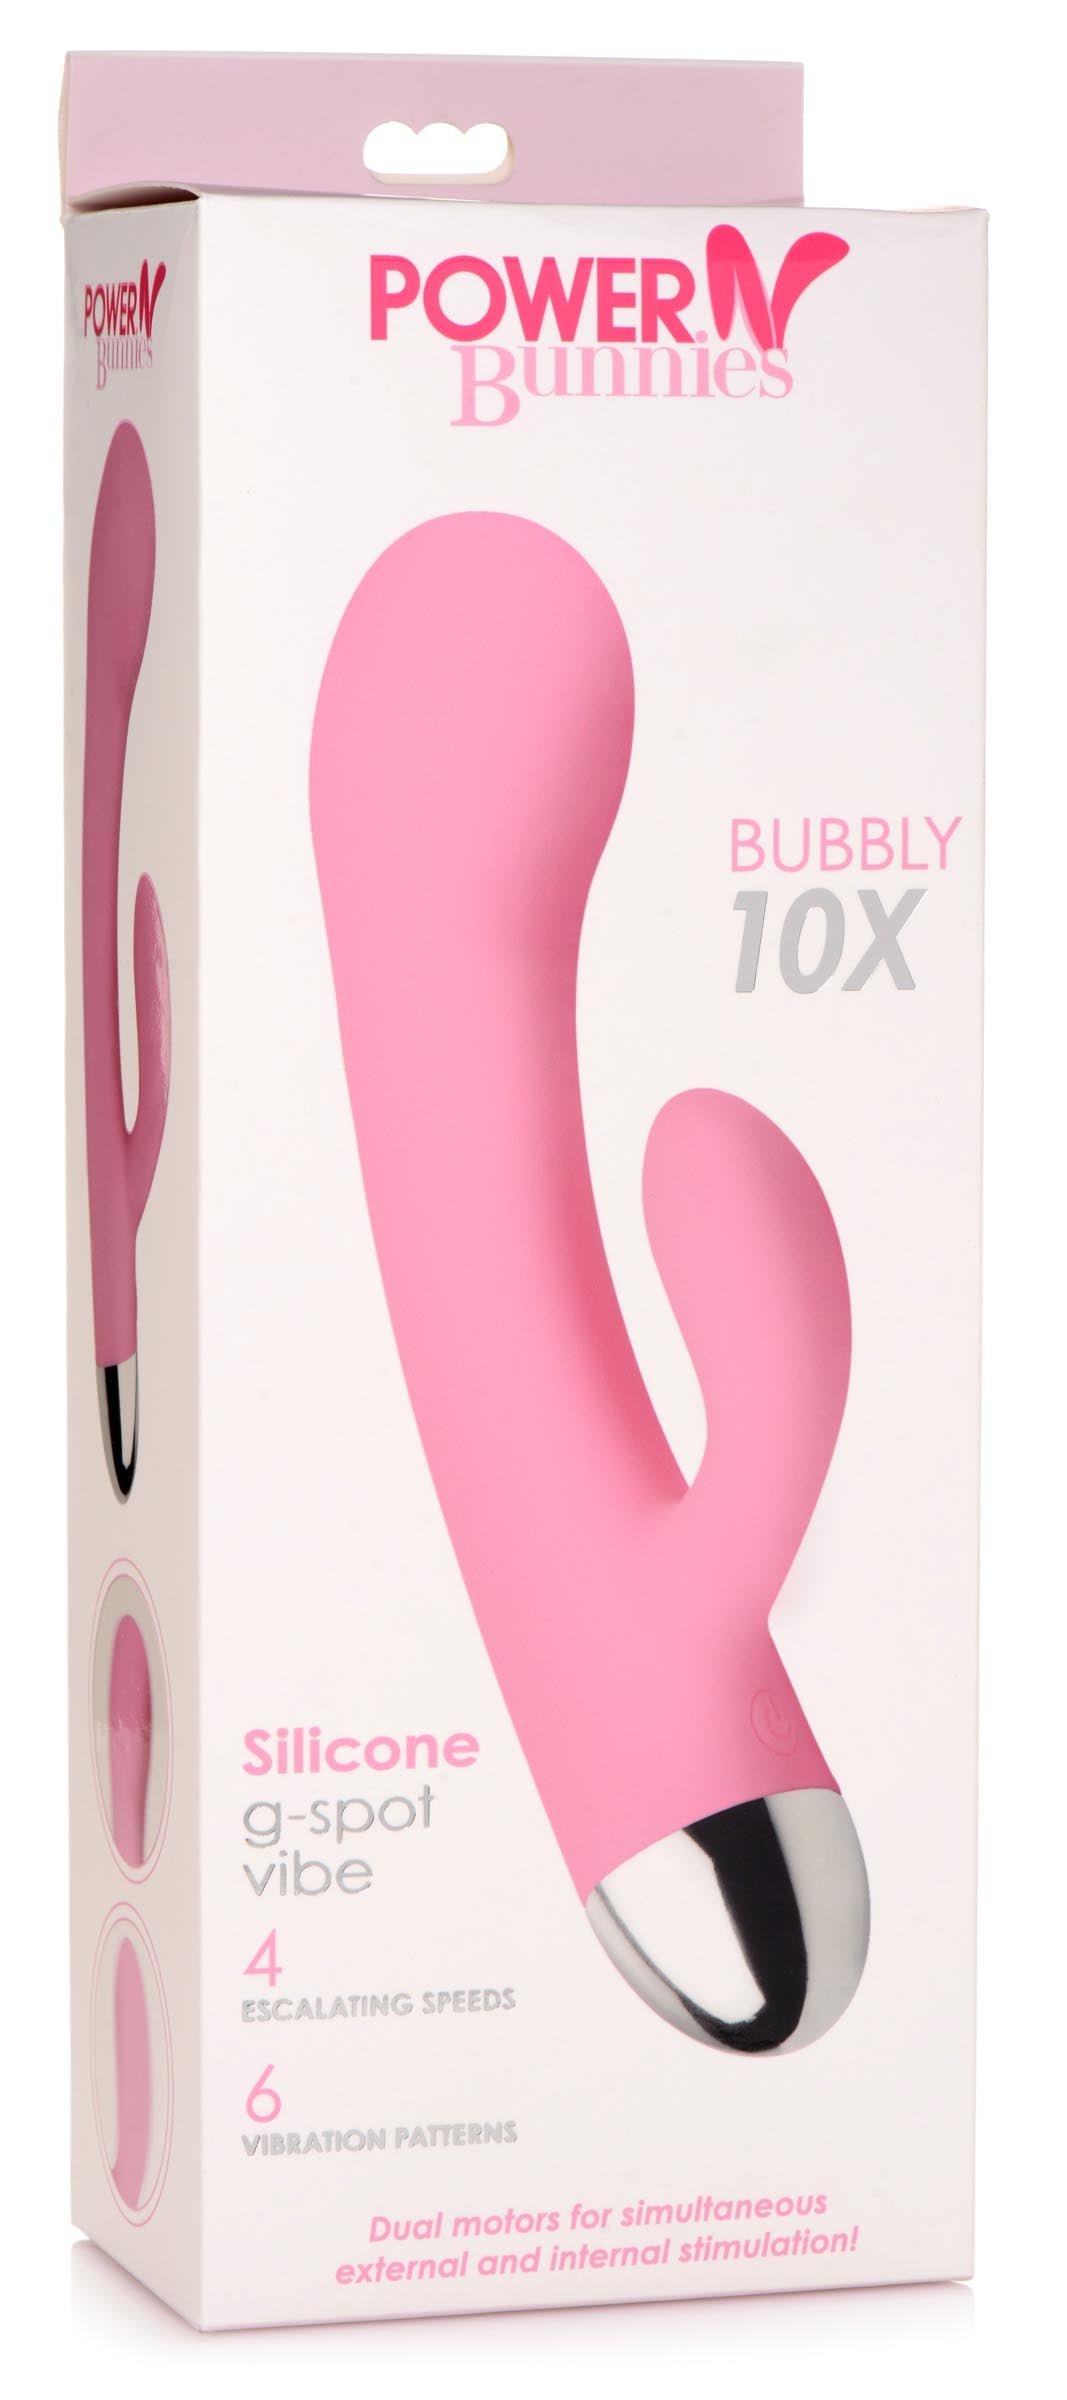 Bubbly 10X Silicone G-Spot Vibrator